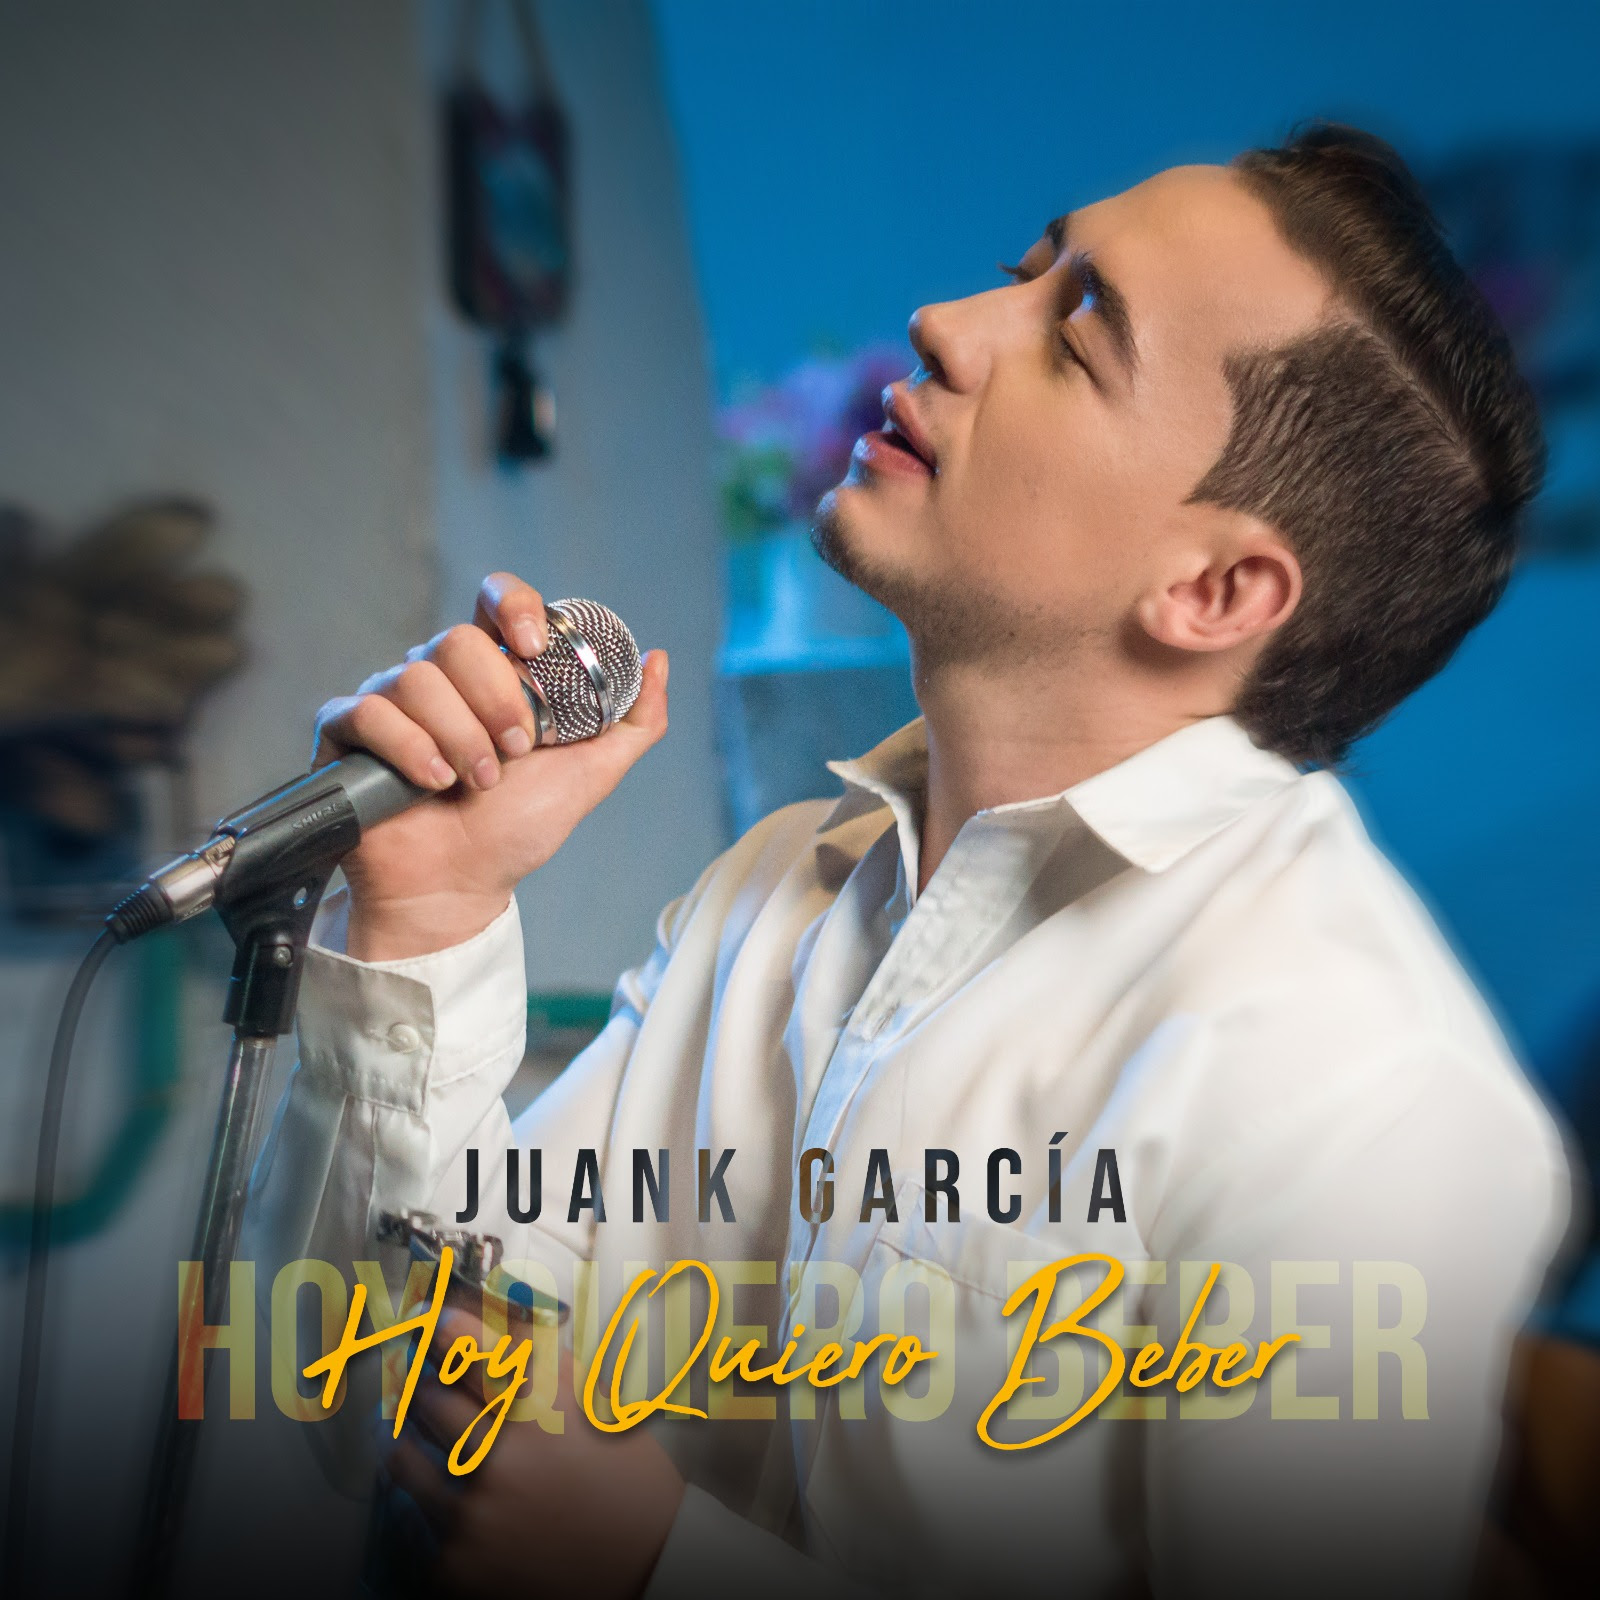 El artista santandereano Juank García nos presenta su nuevo lanzamiento musical ‘Hoy Quiero Beber’